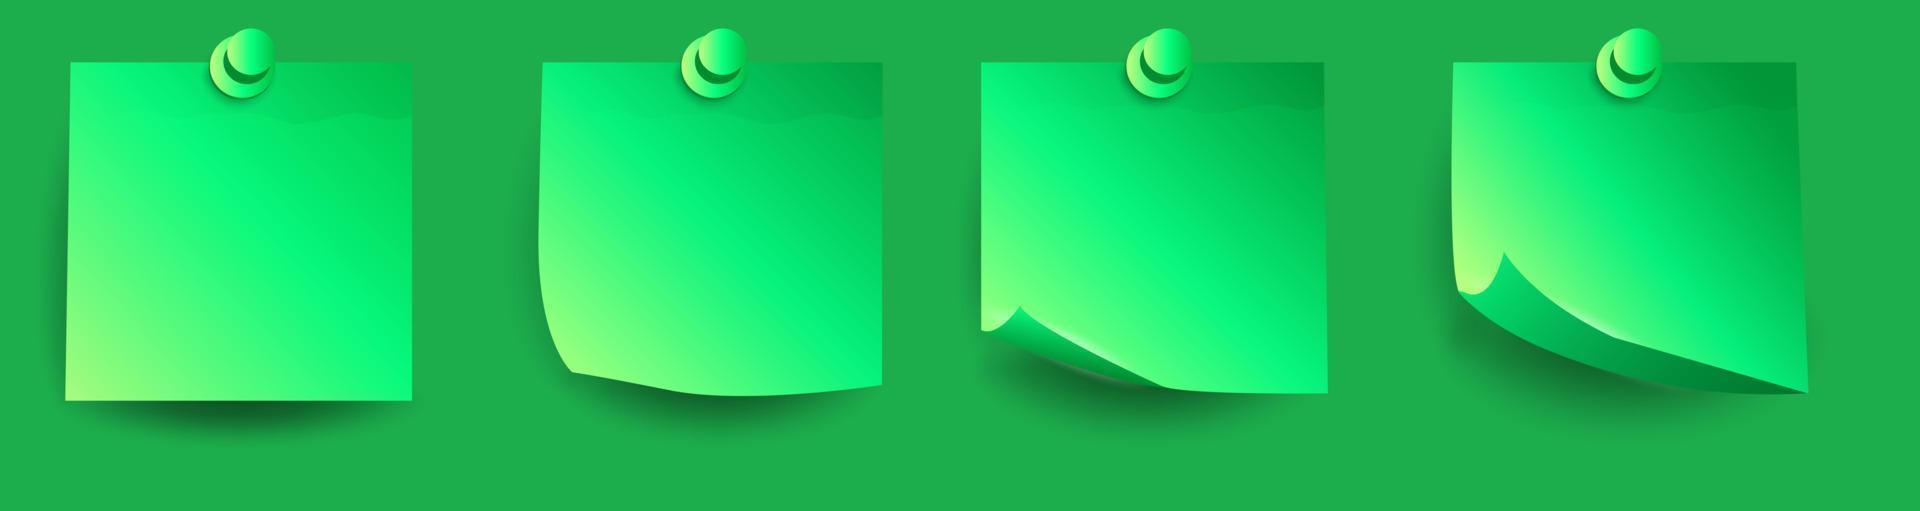 conjunto de realista verde 3d papel pegatinas con rizado rincones y oscuridad vector